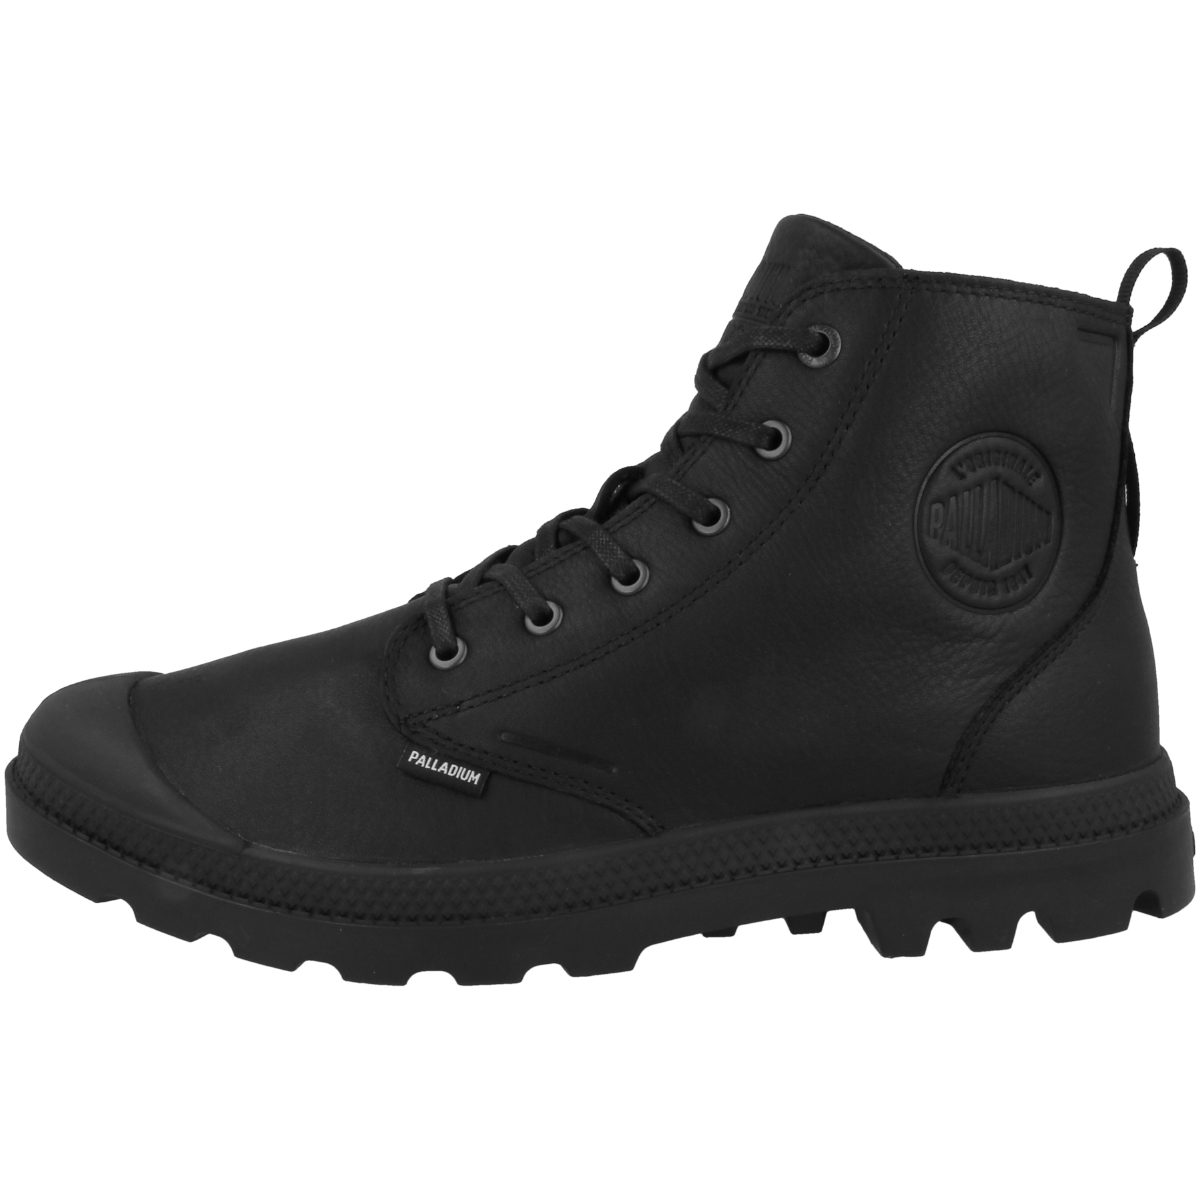 Palladium Pampa Hi Essential Leather Waterproof Boots schwarz